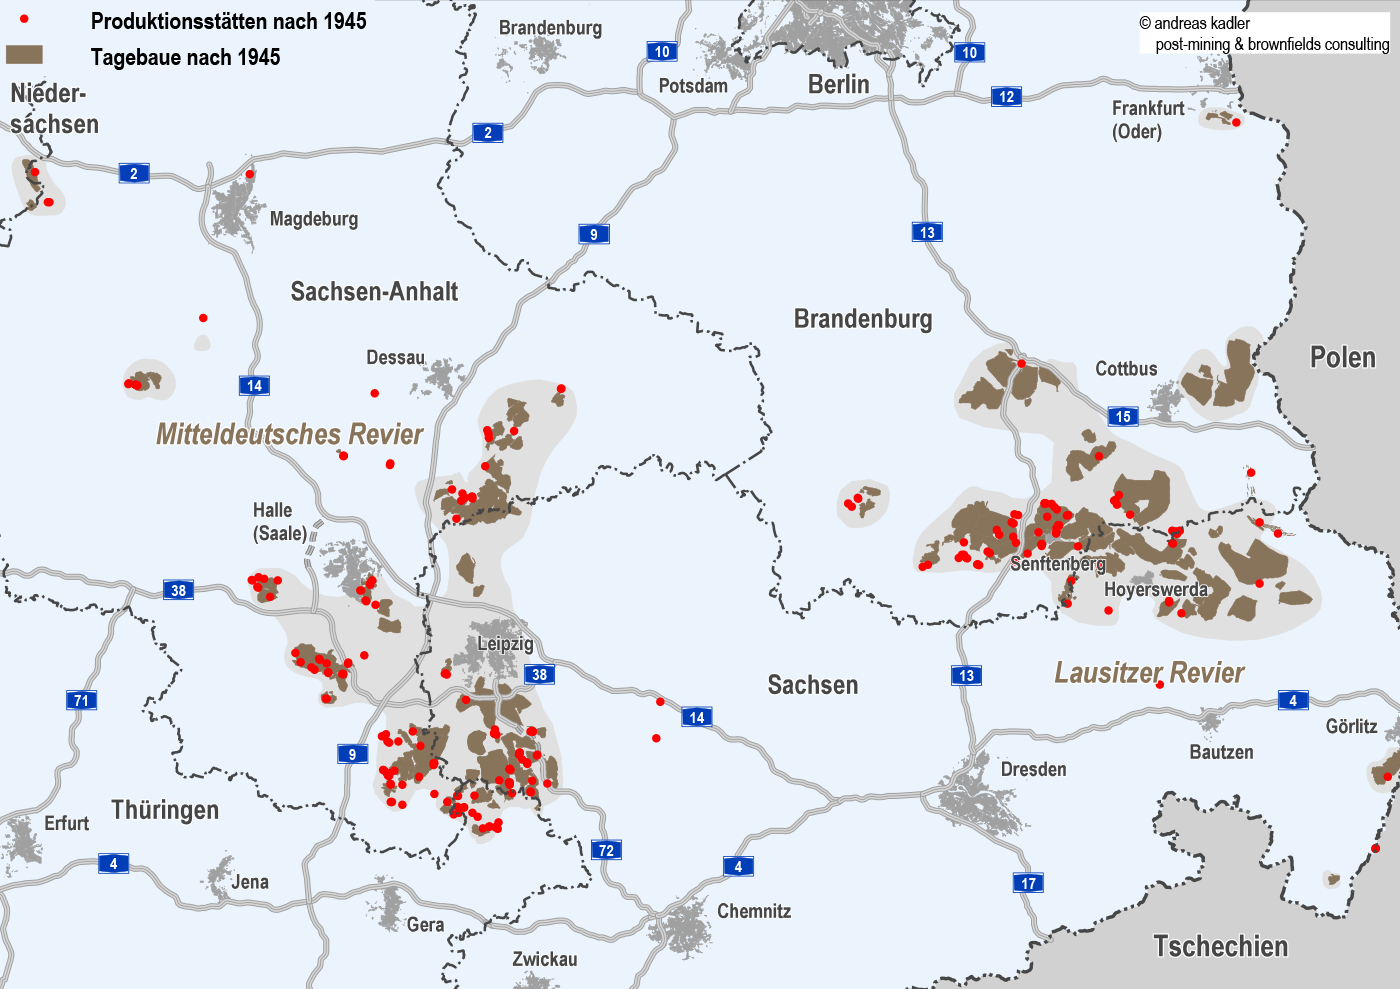 Tagebaue und Produktionsstätten der ostdeutschen Braunkohlenindustrie 1945-1990